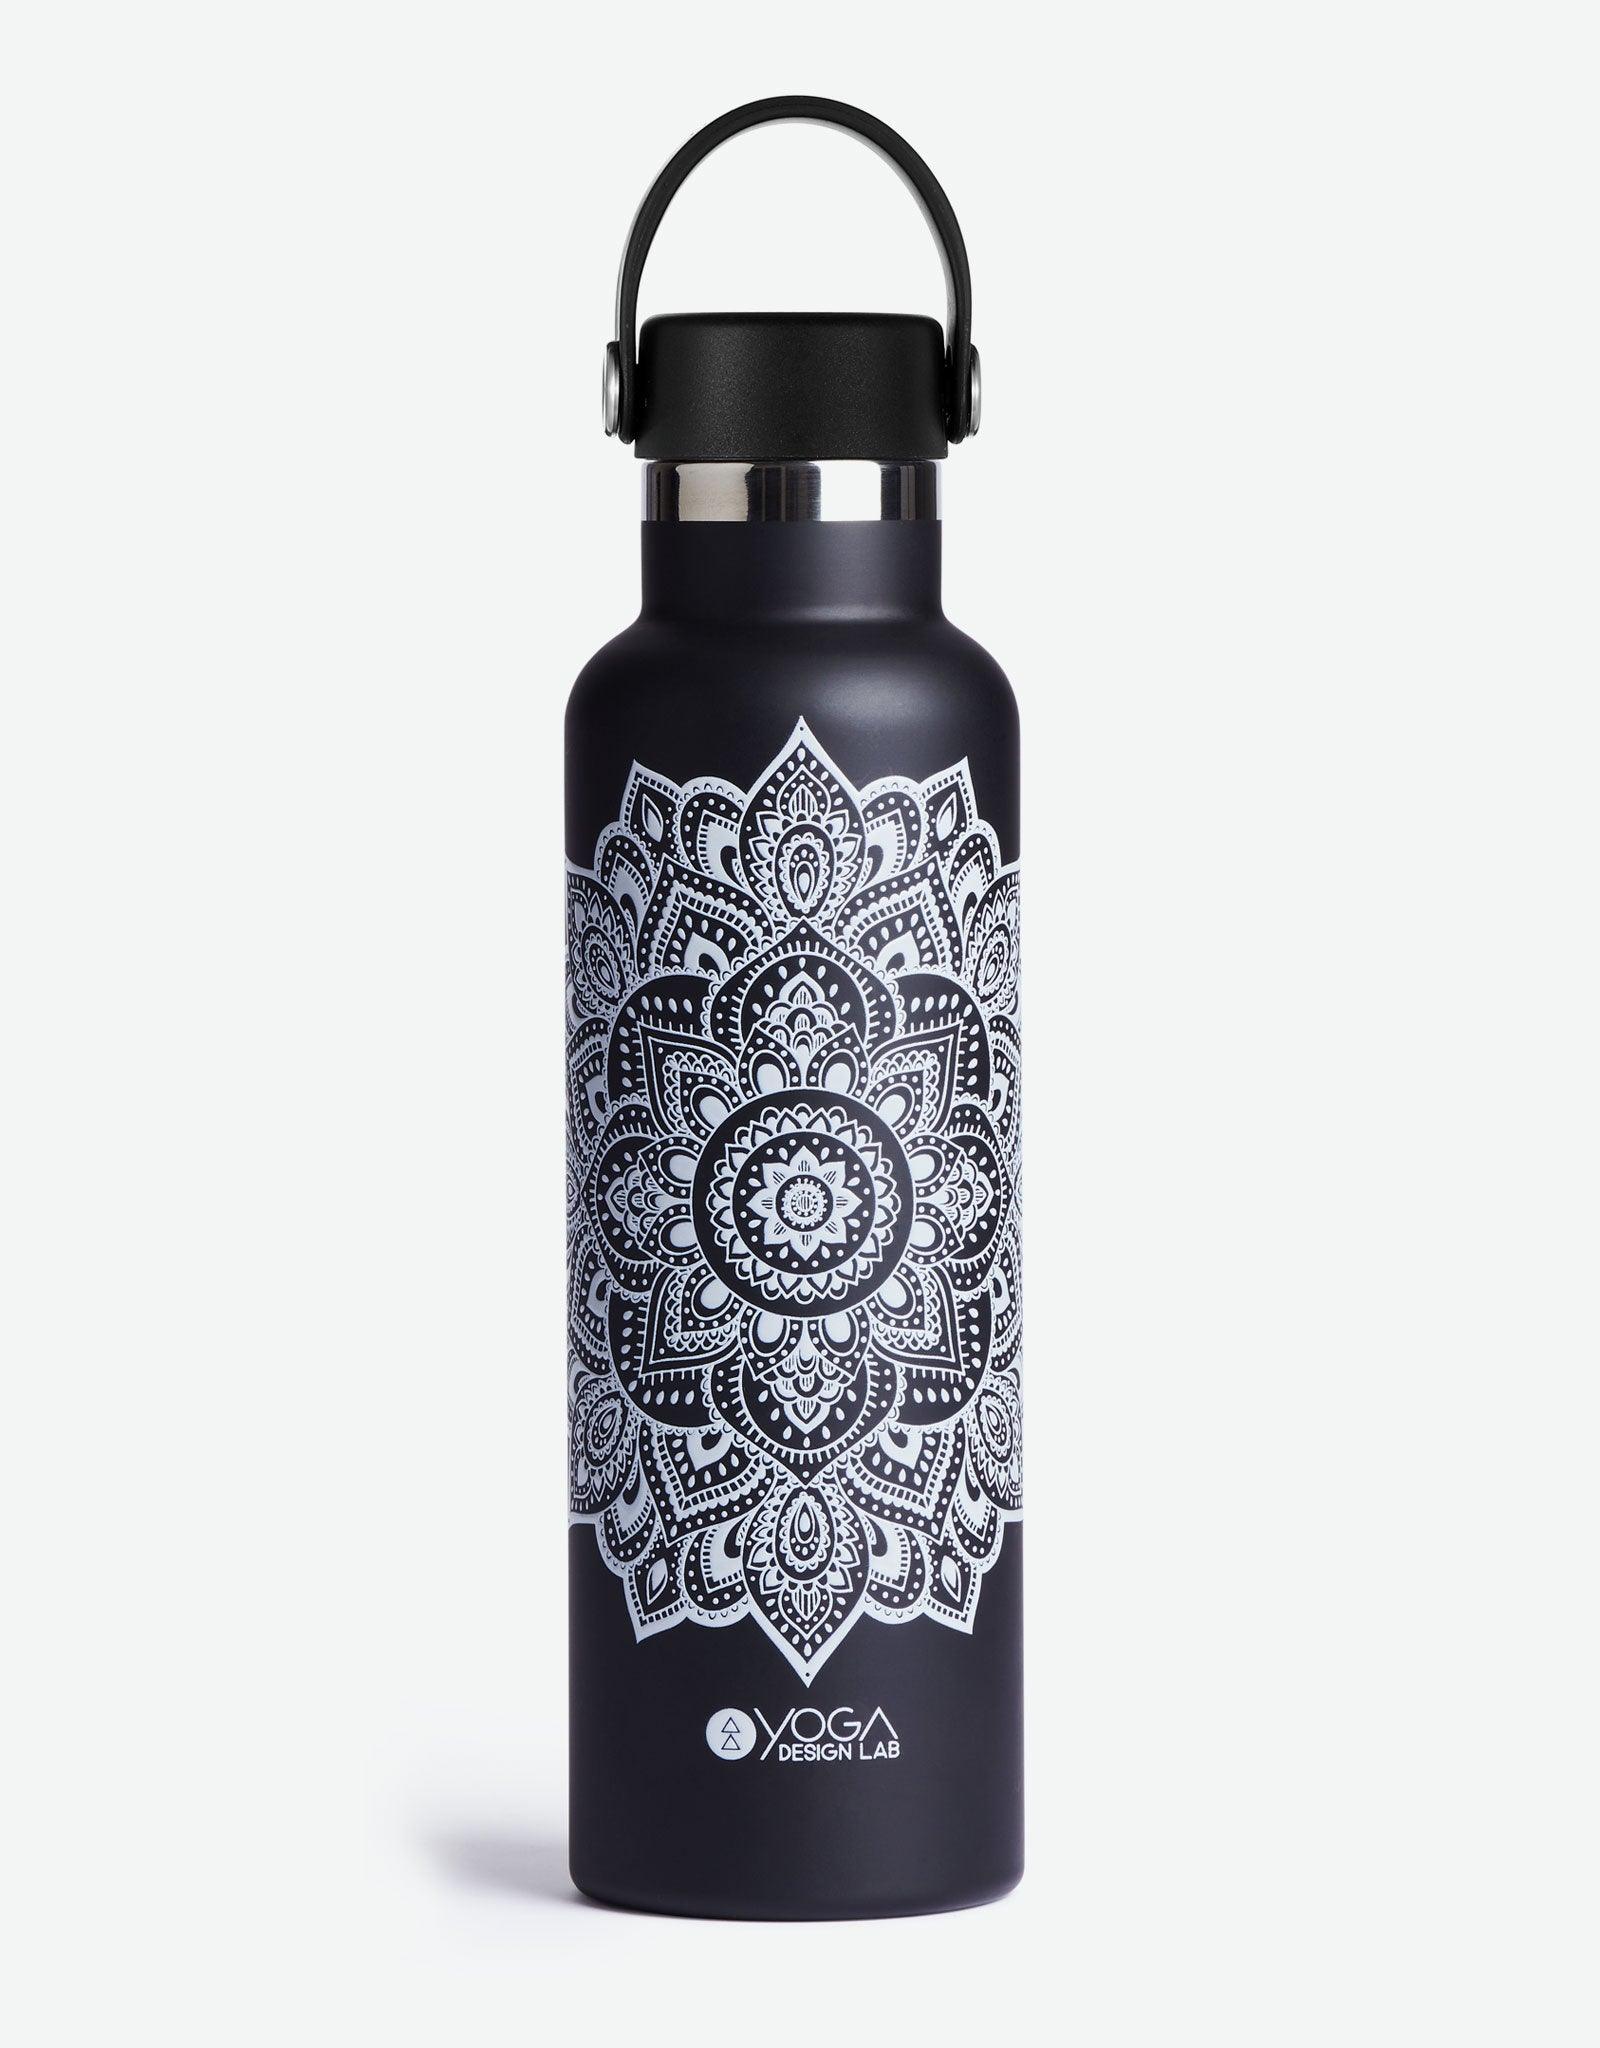 http://www.yogadesignlab.com/cdn/shop/files/yoga-water-bottle-mandala-black-insulated-water-bottle-and-stainless-steel-bottles-yoga-design-lab-1.jpg?v=1686372249